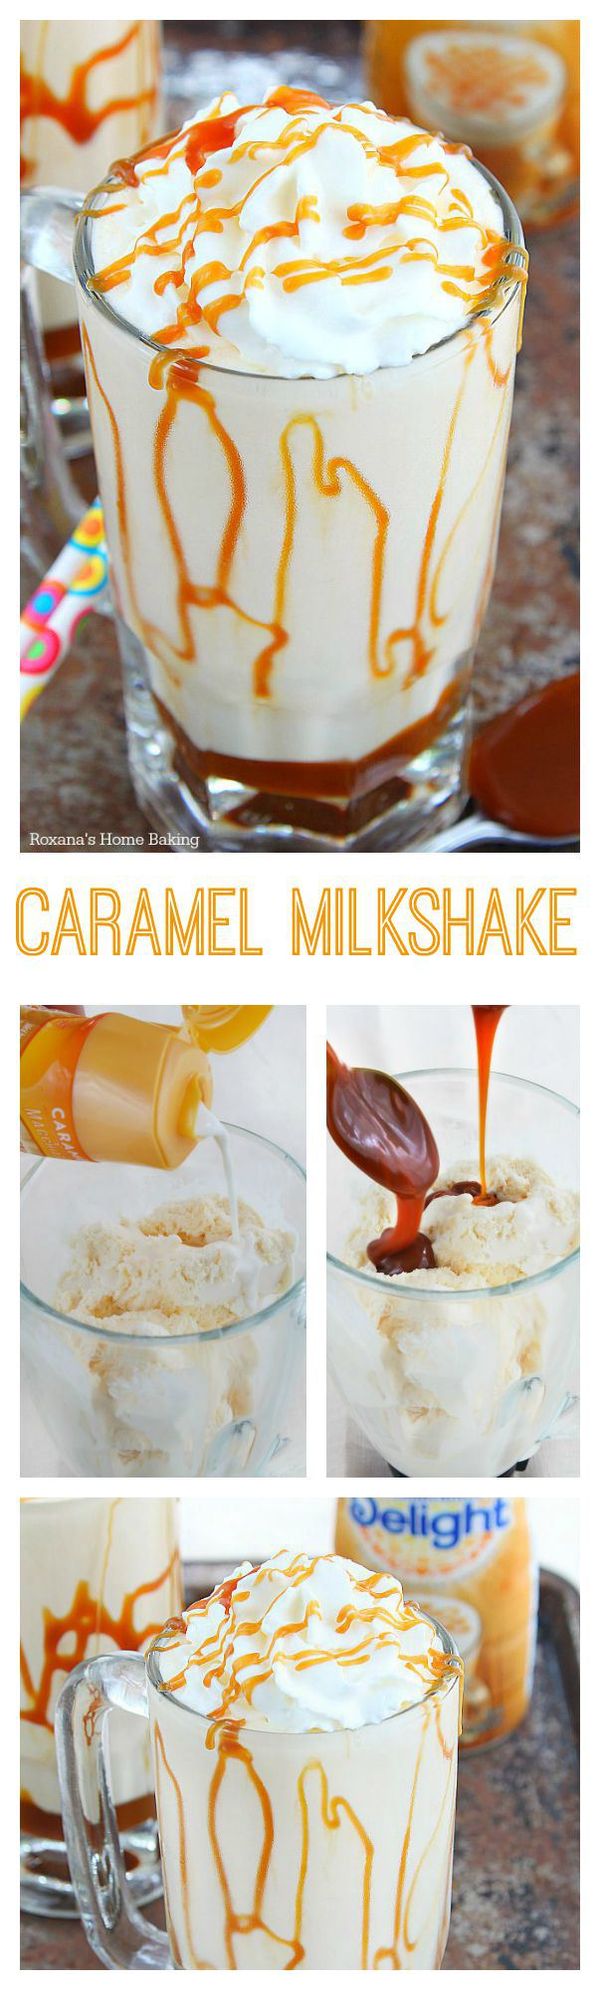 Caramel milkshake